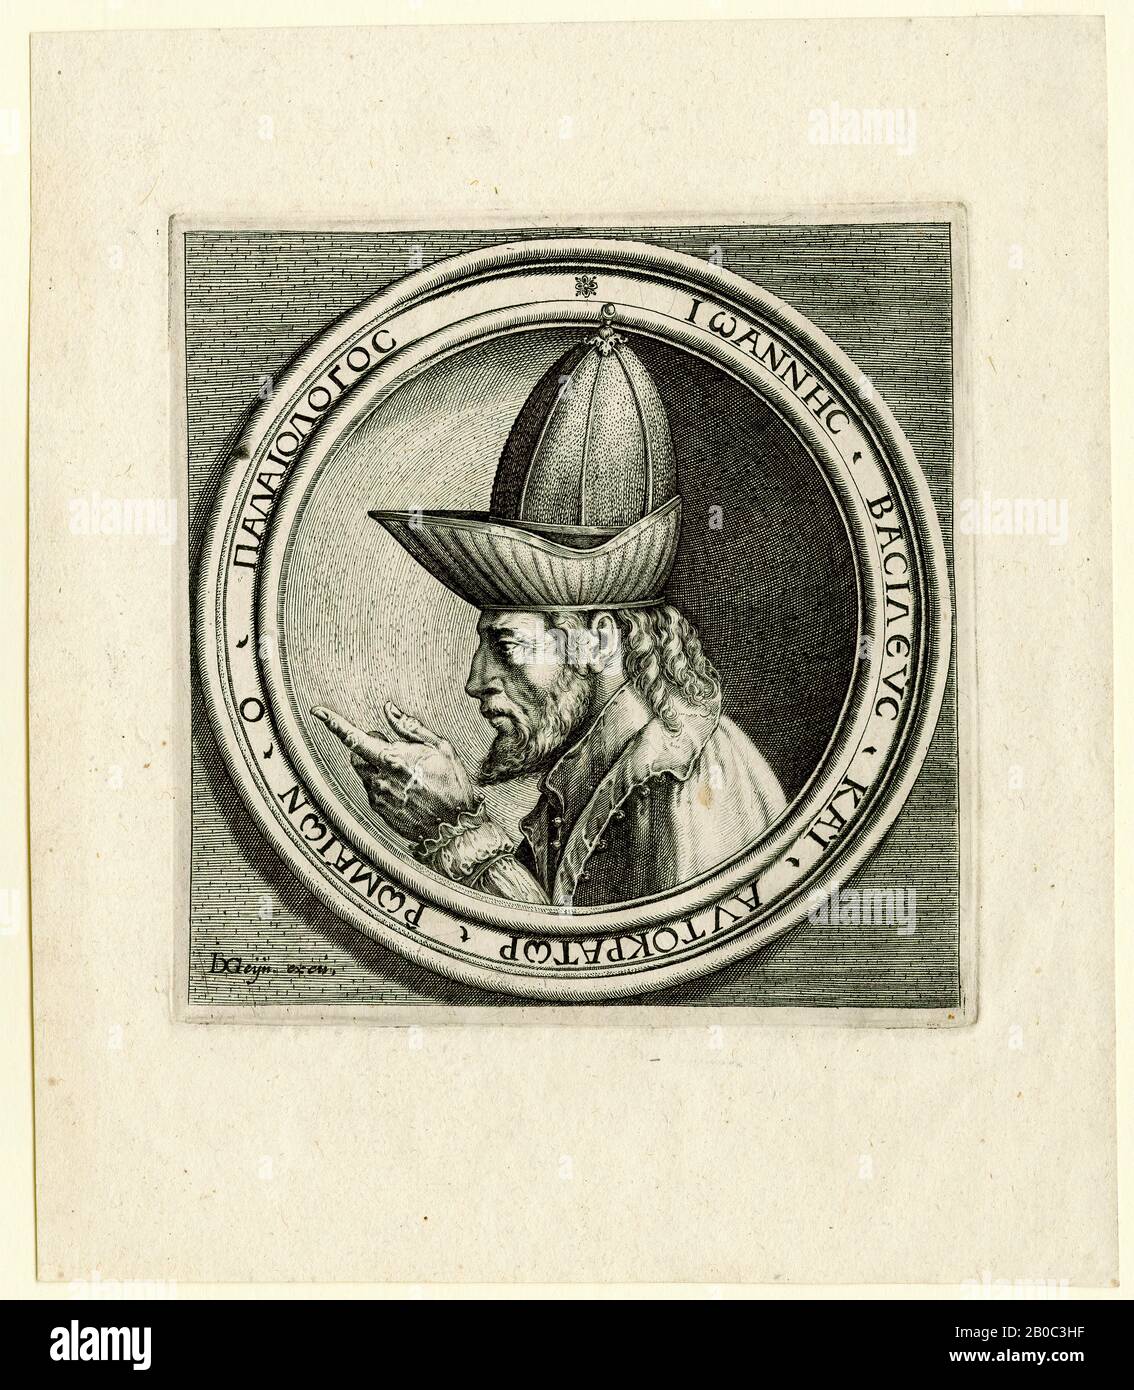 Jacques de Gheyn, Giovanni VIII Paleologo (Johannes VII Paleologo), ca. 1595, incisione su carta cremosa, 6 3/4 in. x 5 7/8 in. (17,15 cm x 14,92 cm), pittore e incisore olandese Jacques de Gheyn apparteneva ad un gruppo di artisti che superarono il vocabolario formale esagerato ed eccessivamente artificiale del manierismo olandese adottando uno stile naturalista basato sull'osservazione. Le incisioni di de Gheyn sulle medaglie di ritratto, come questo esempio di Paleologo, indicano il suo interesse per il naturalismo e dimostrano la sua capacità di riprodurre accuratamente le proporzioni delle caratteristiche facciali dei suoi sitters. De Gheyn's en Foto Stock